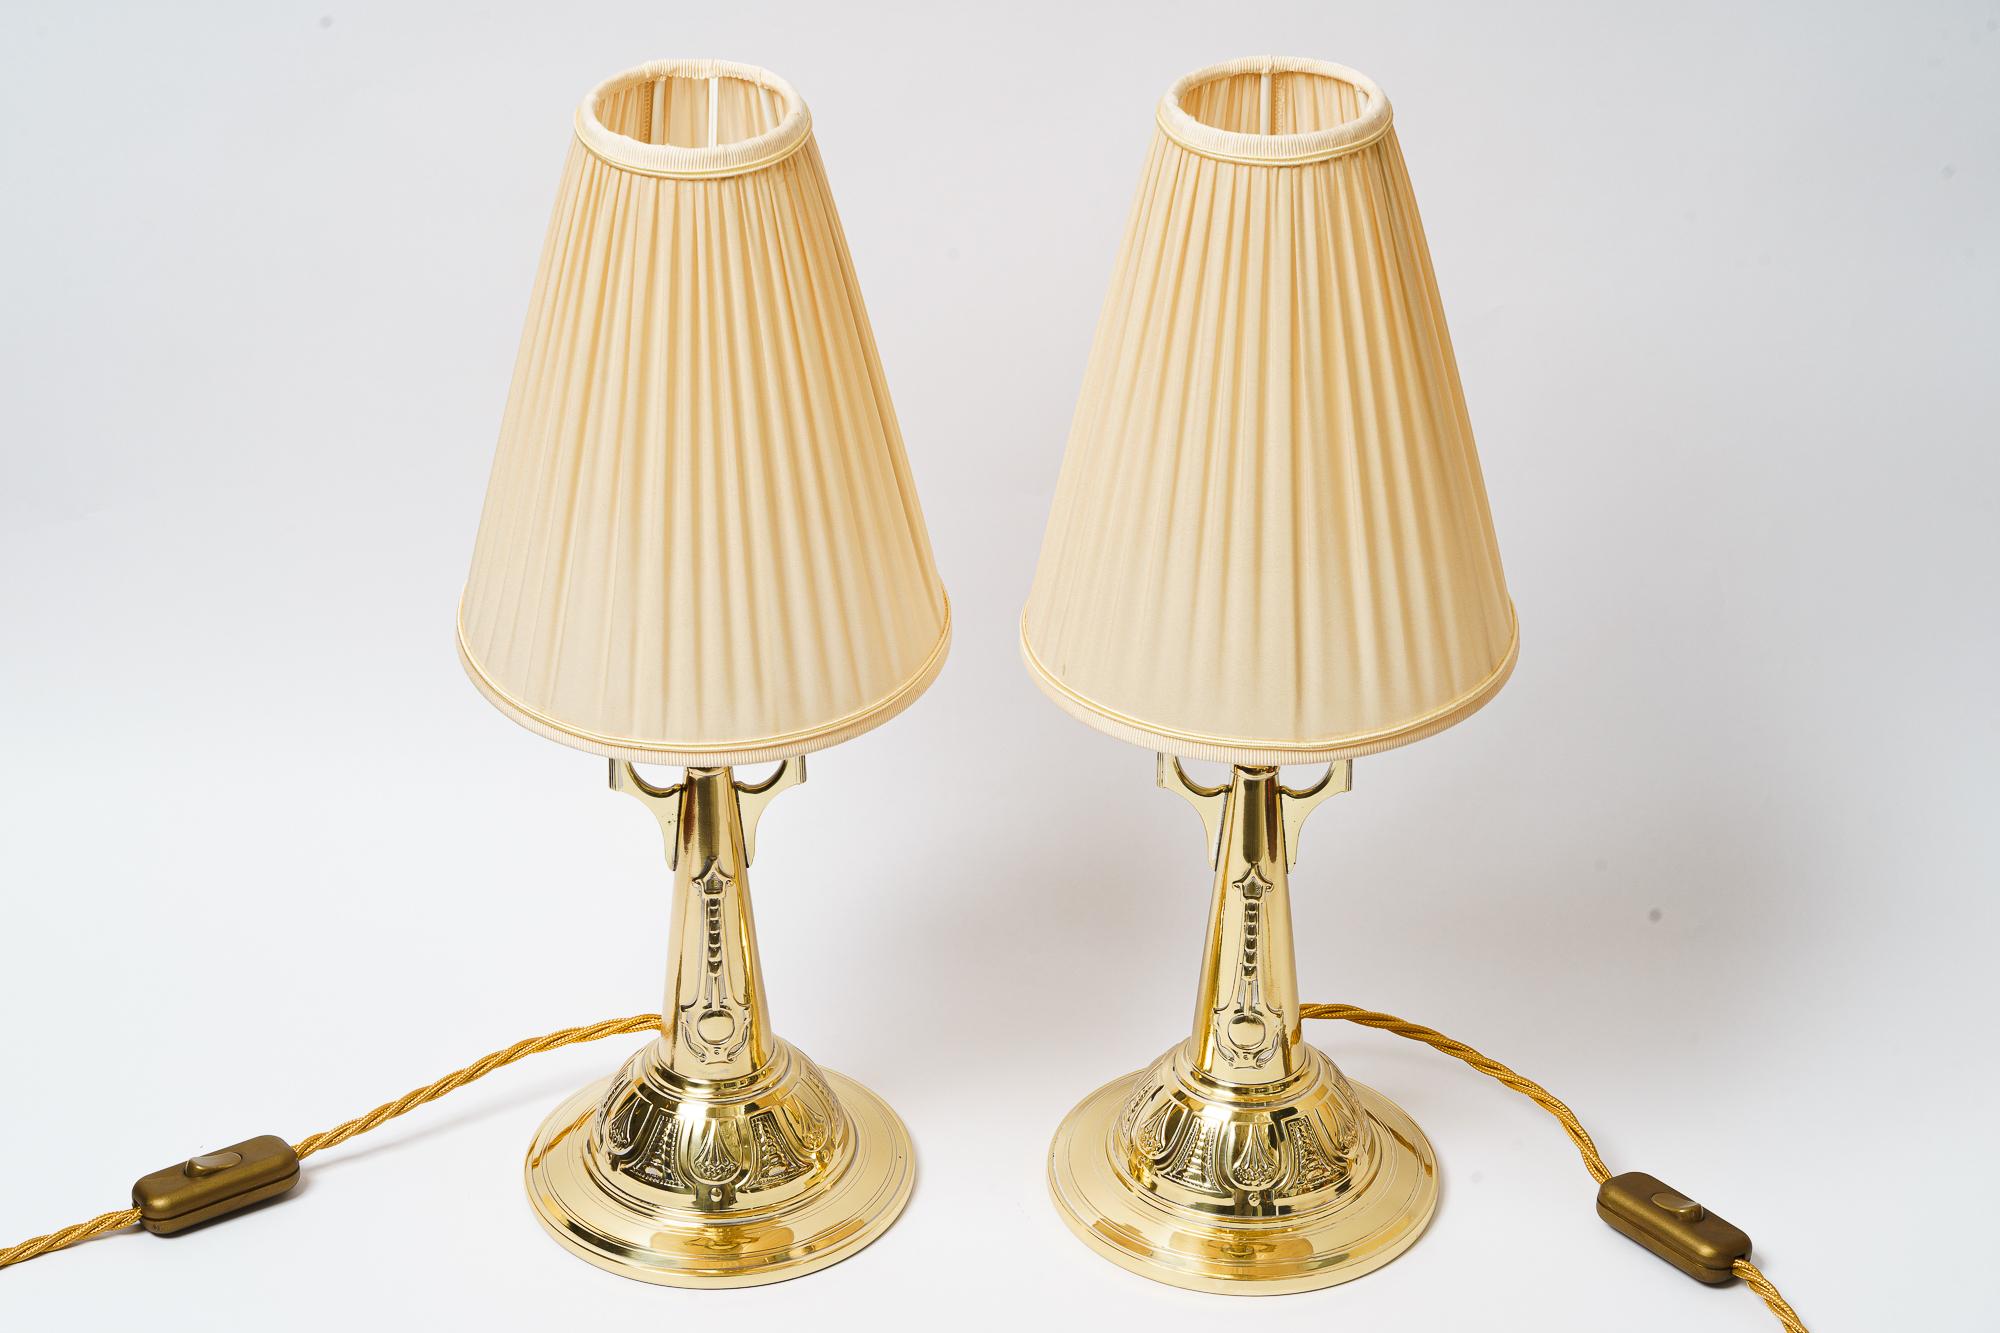 Zwei Art Deco Tischlampen mit Stoffschirmen Wien um 1920er Jahre
Poliert und emailliert
Die Stoffschirme werden ersetzt ( neu )